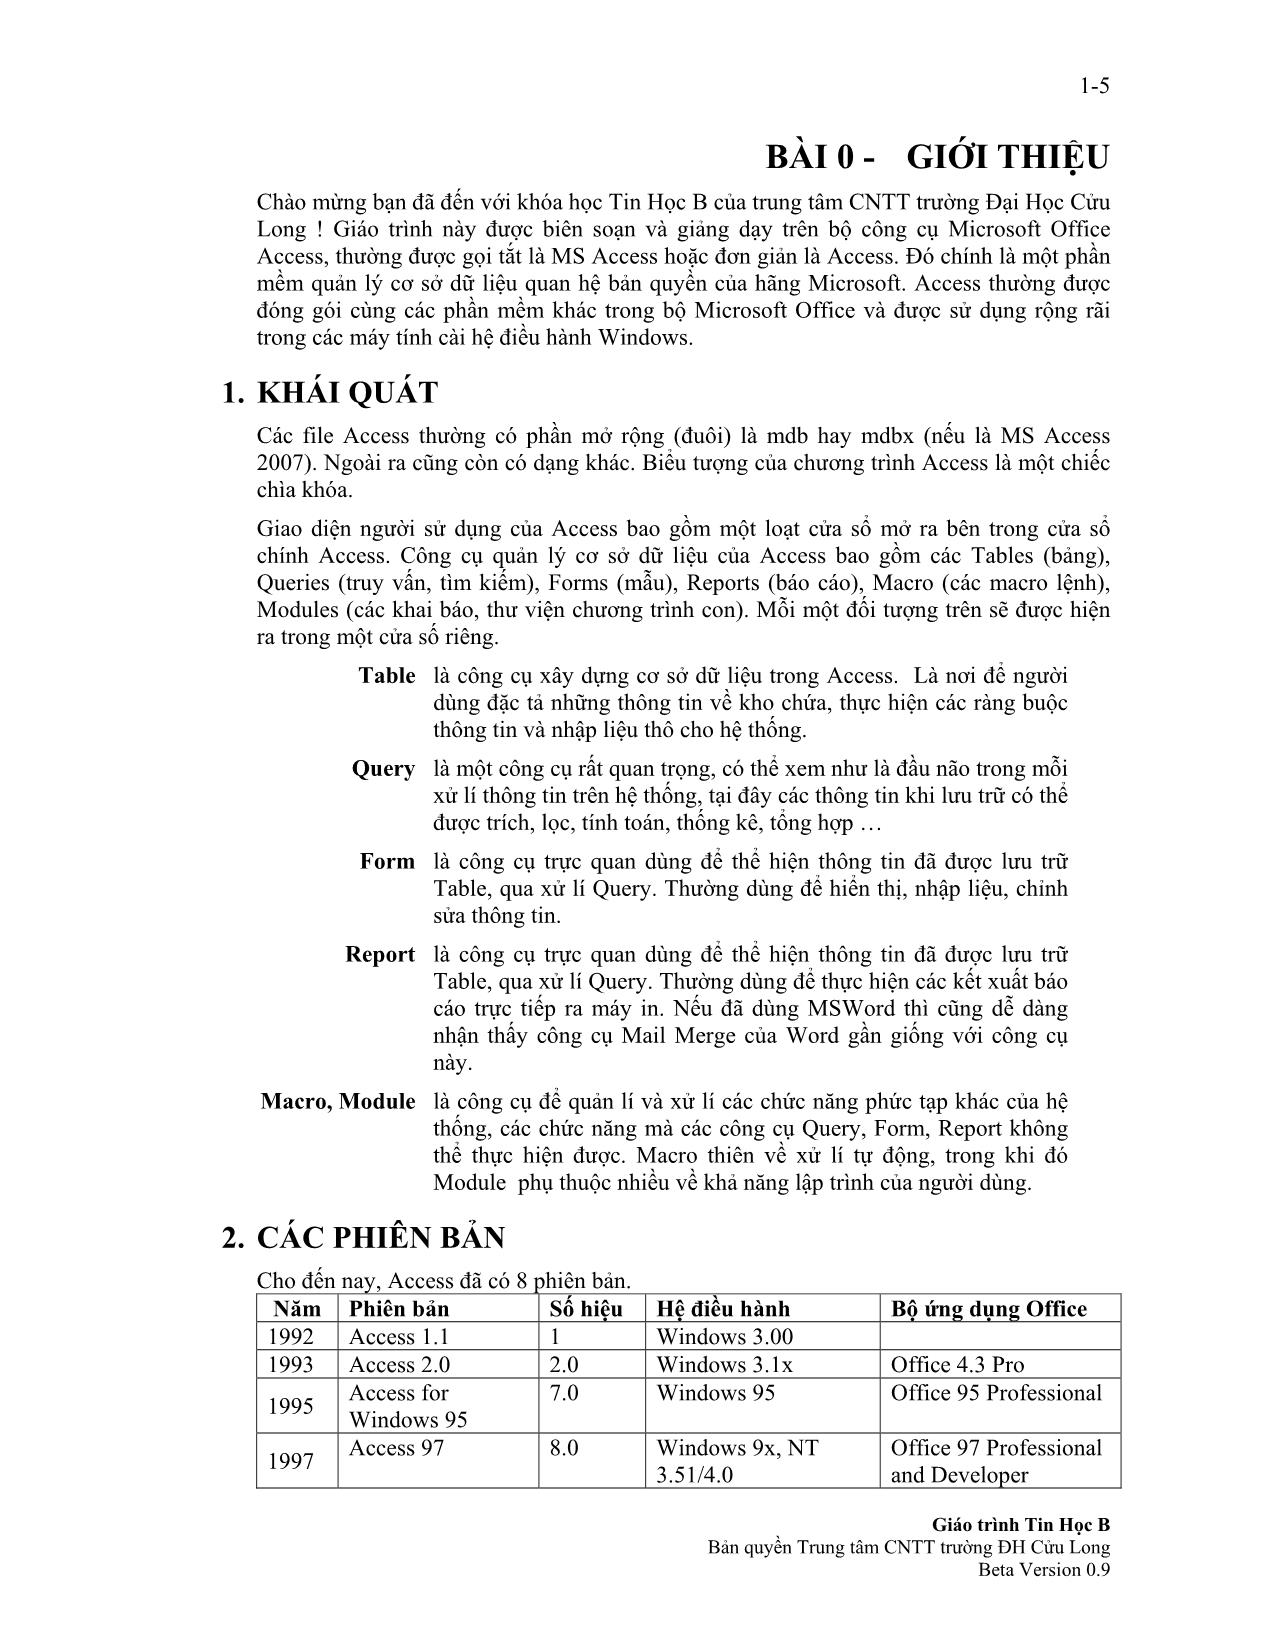 Giáo trình Tin học B trang 5